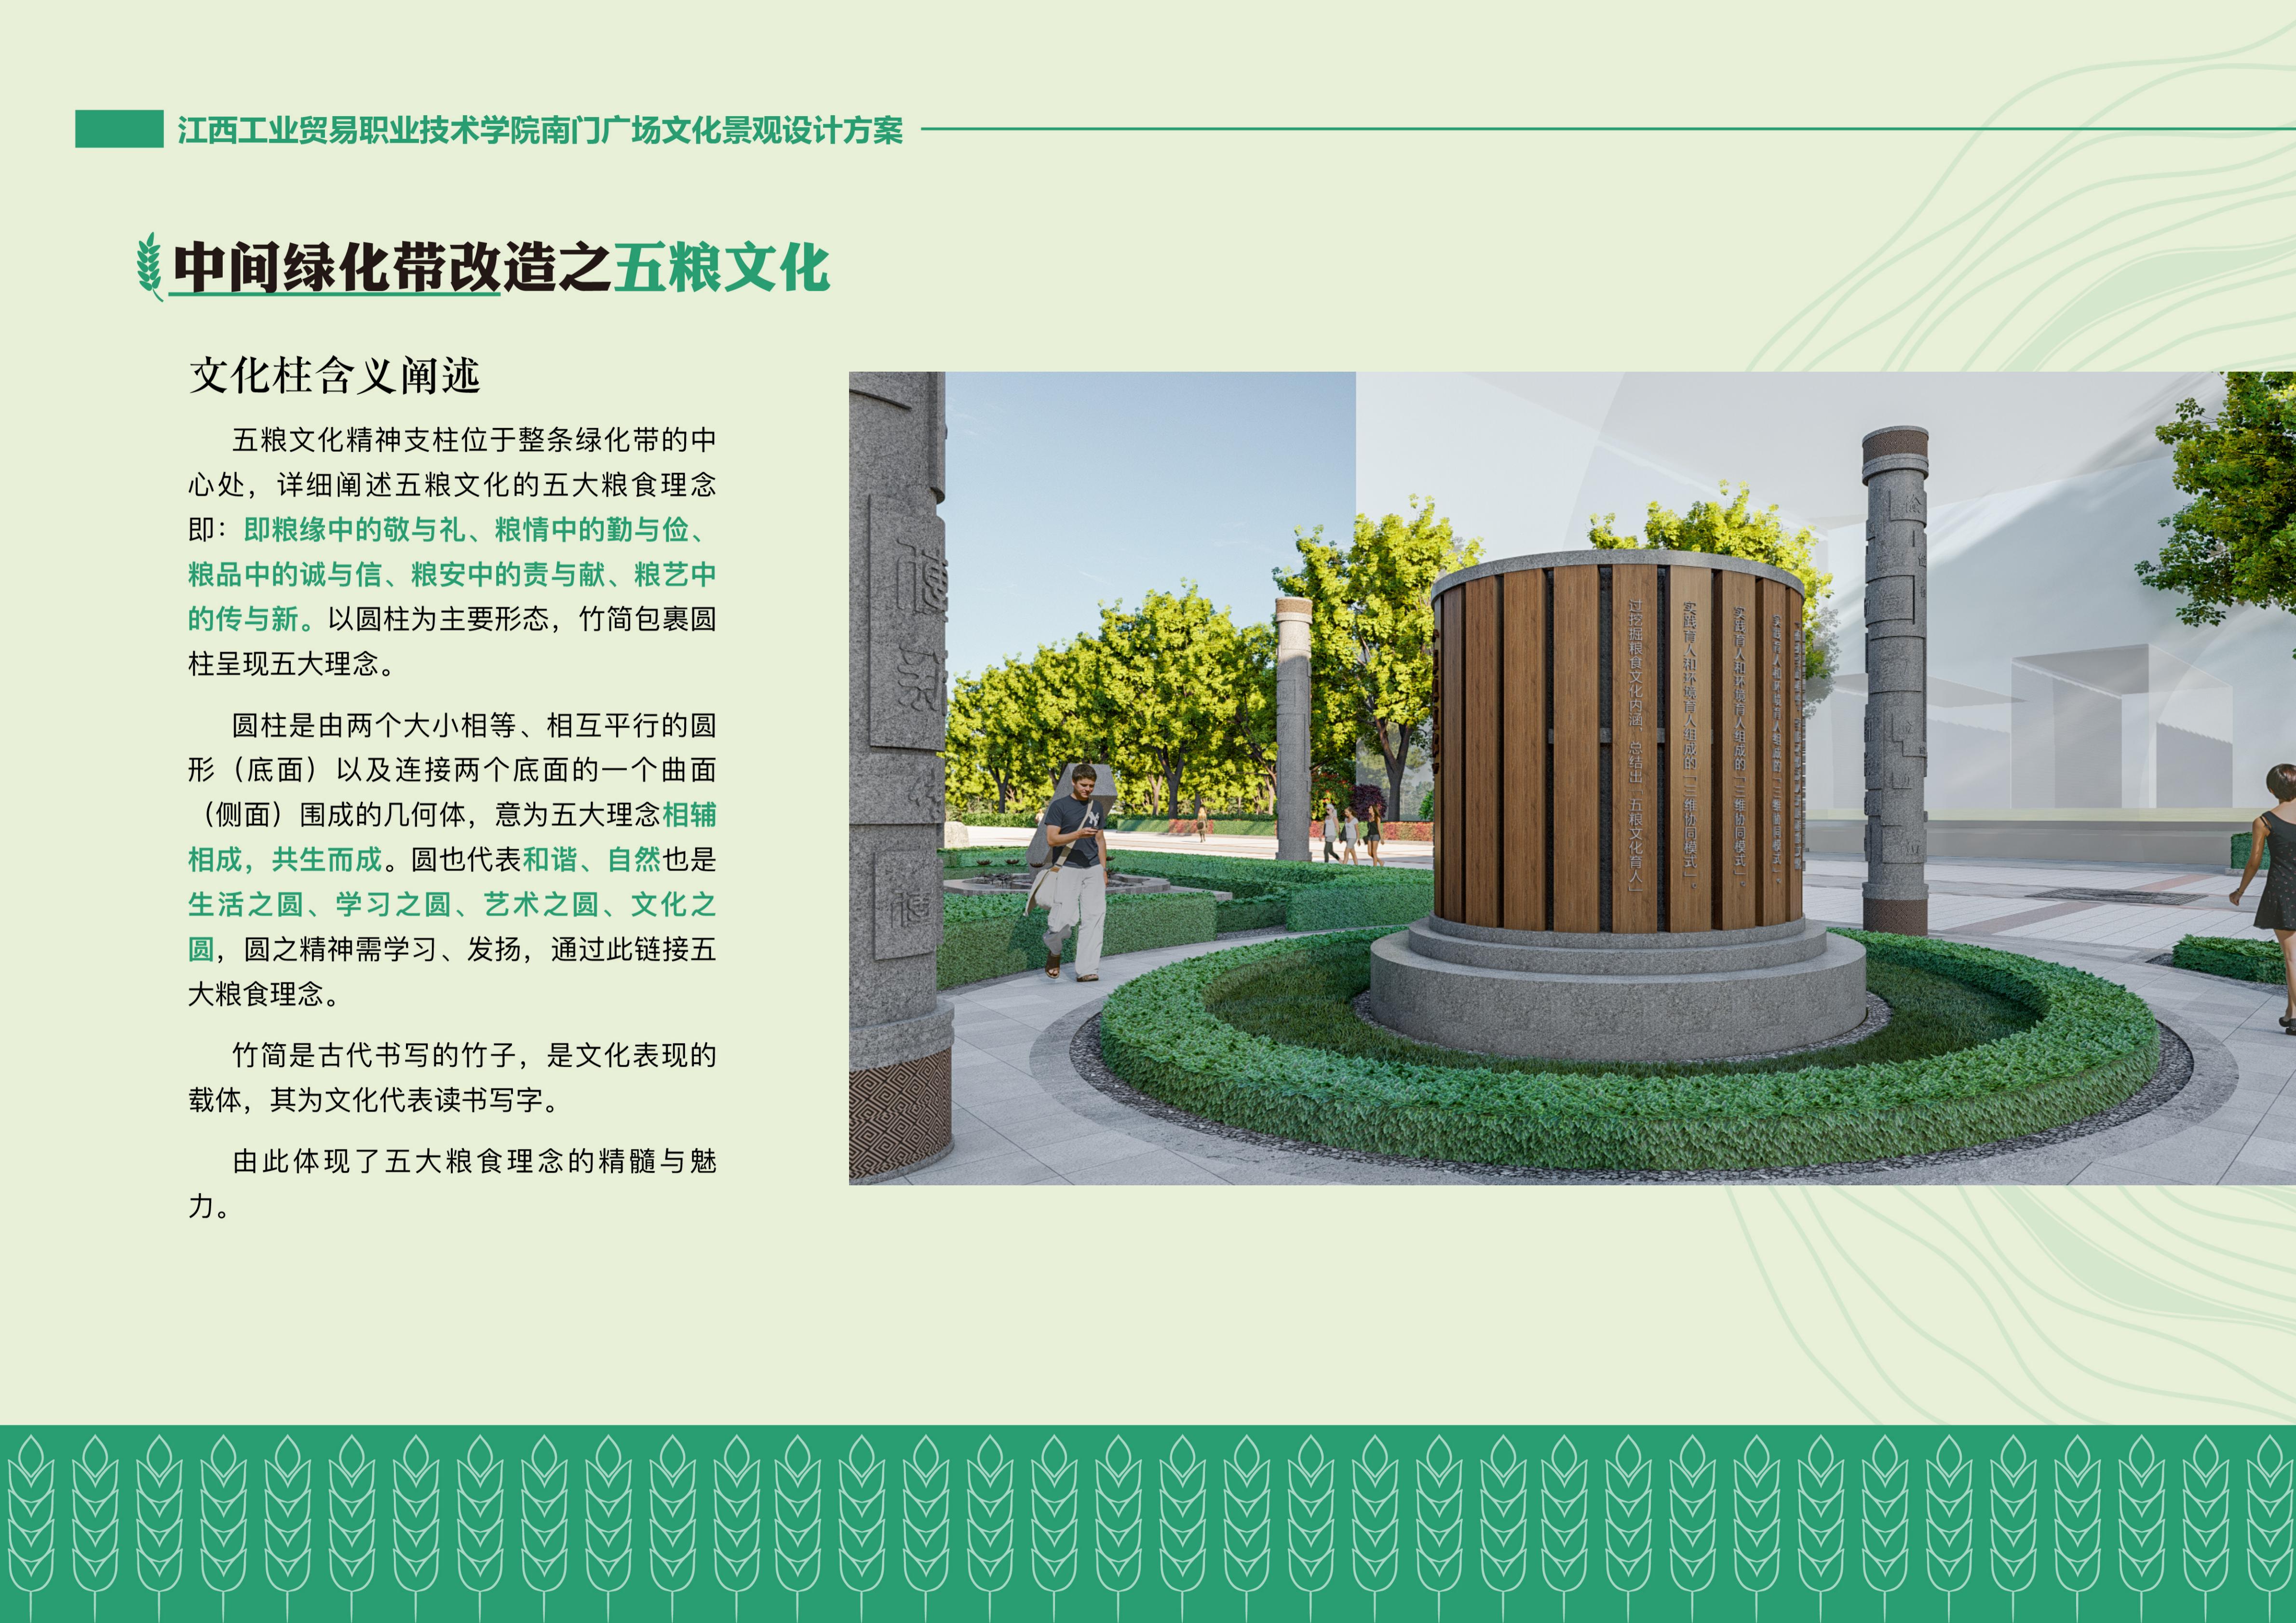 江西工业贸易职业技术学院南门广场文化景观设计方案1稿_25.jpg